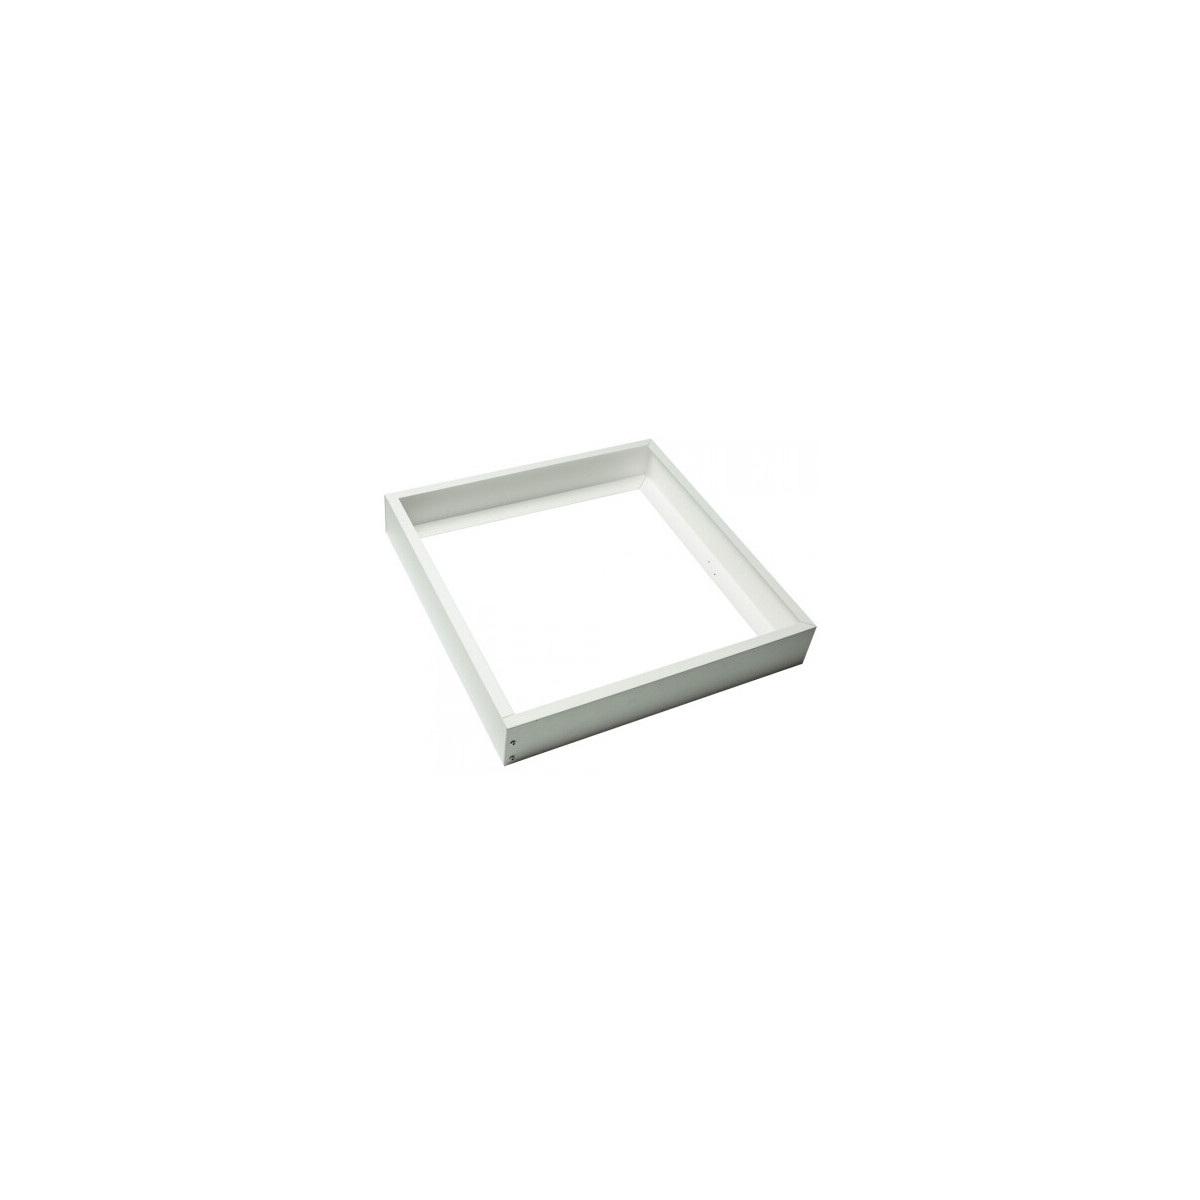 Marco aluminio color plata para instalación en superficie de panel 60x60